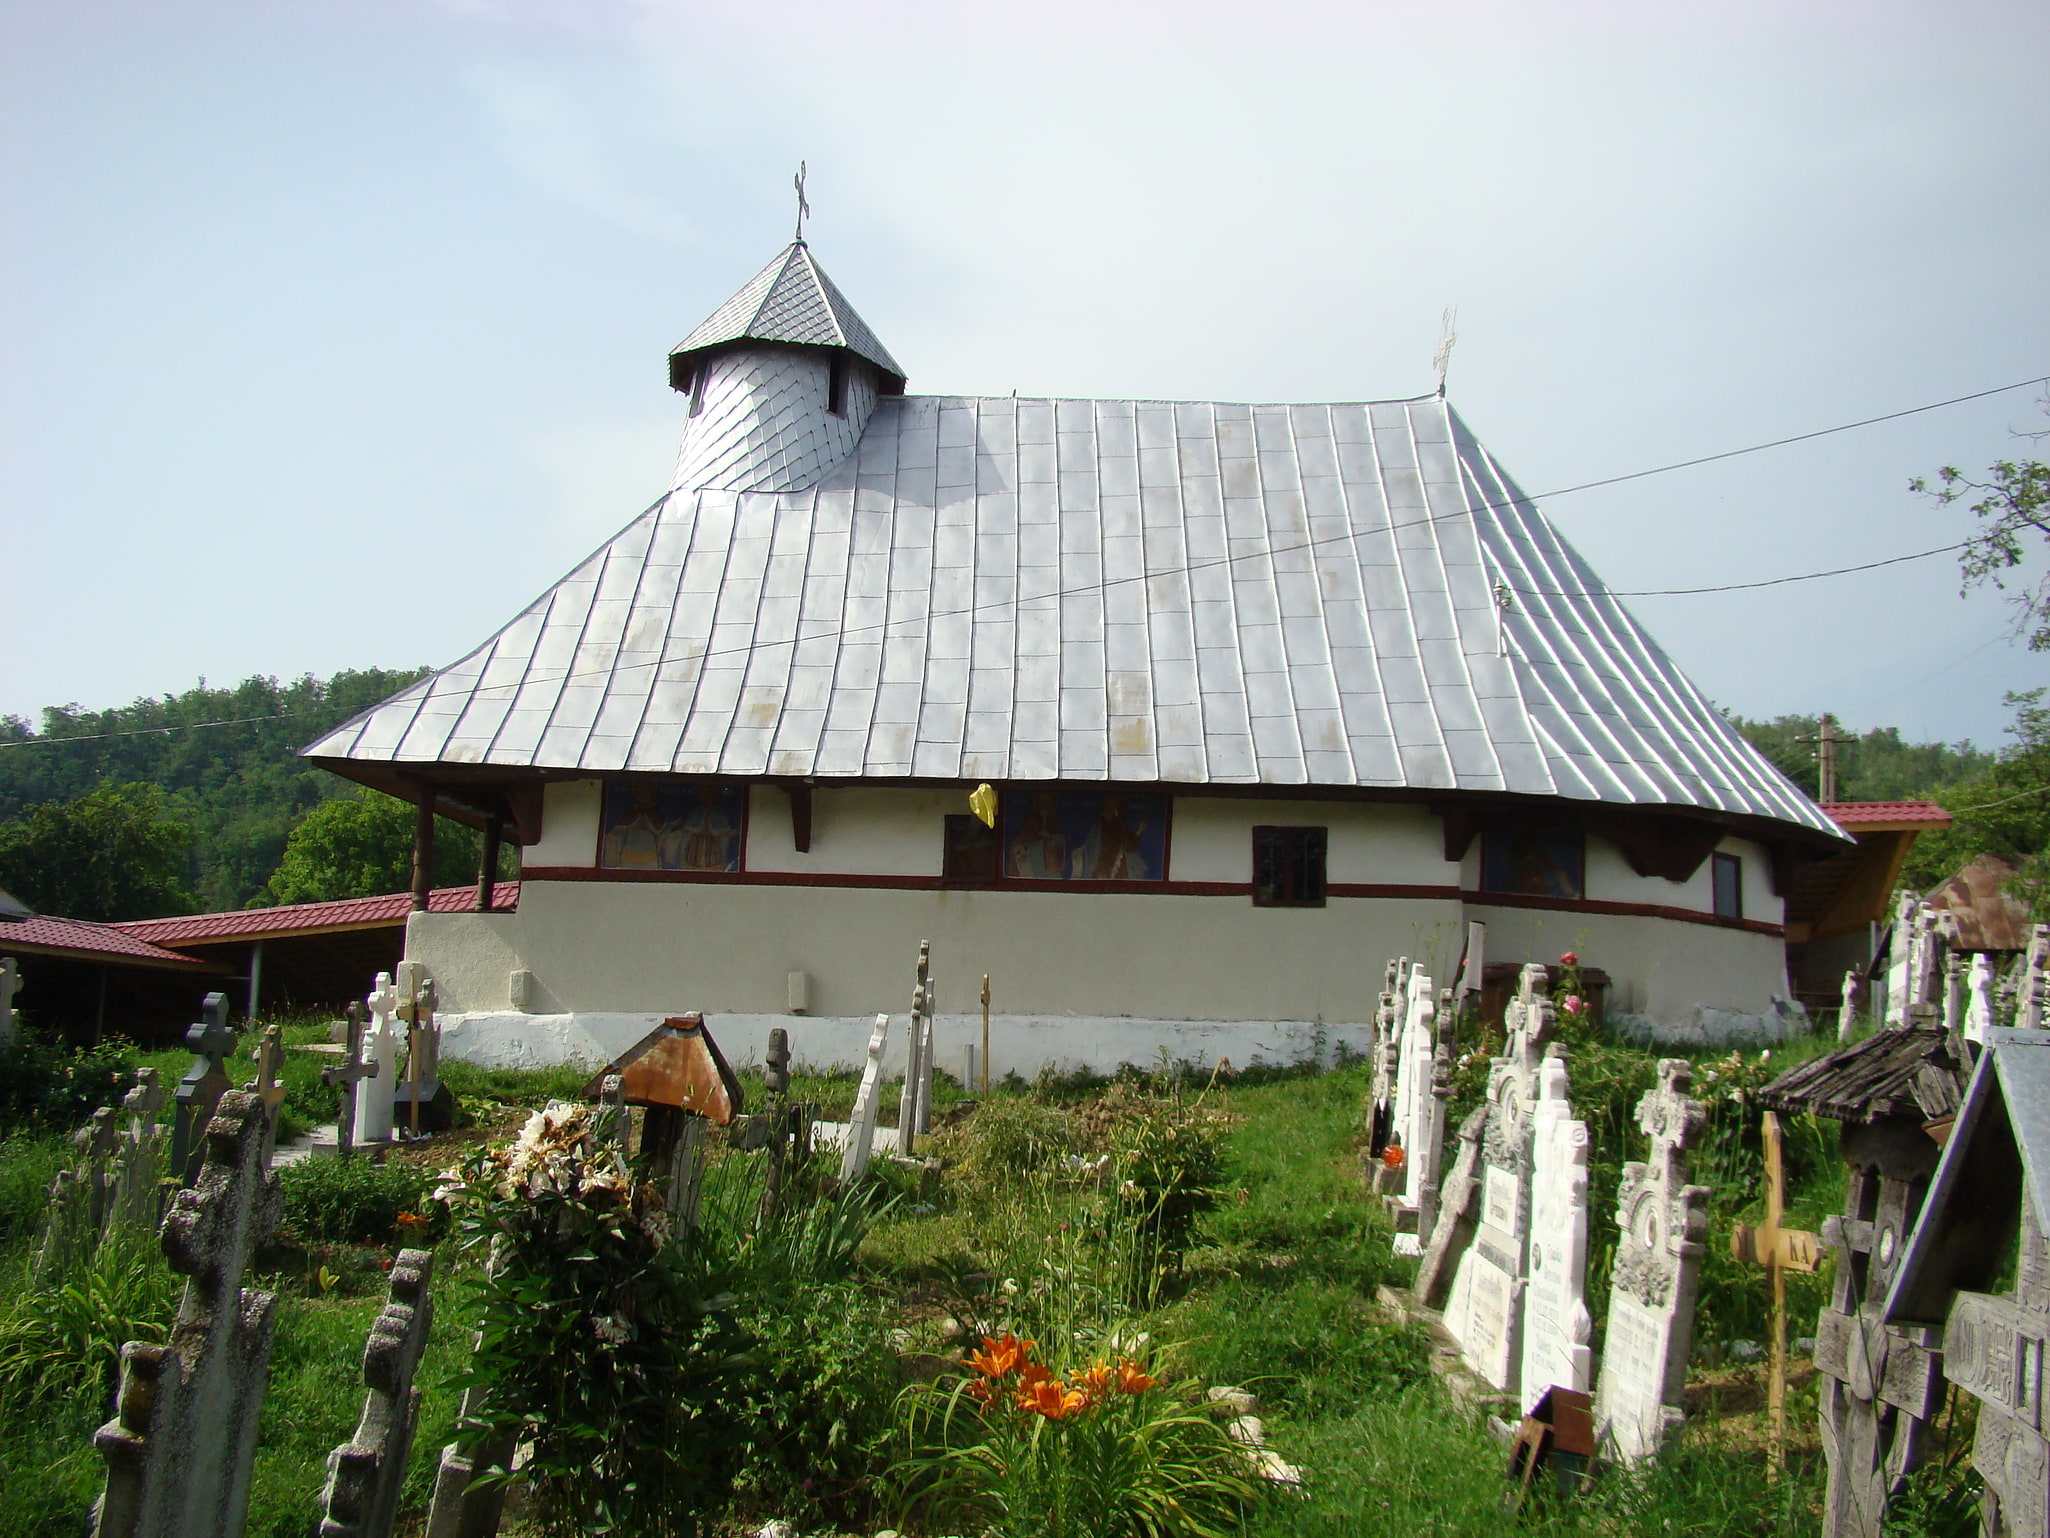 Baia de Fier, Romania